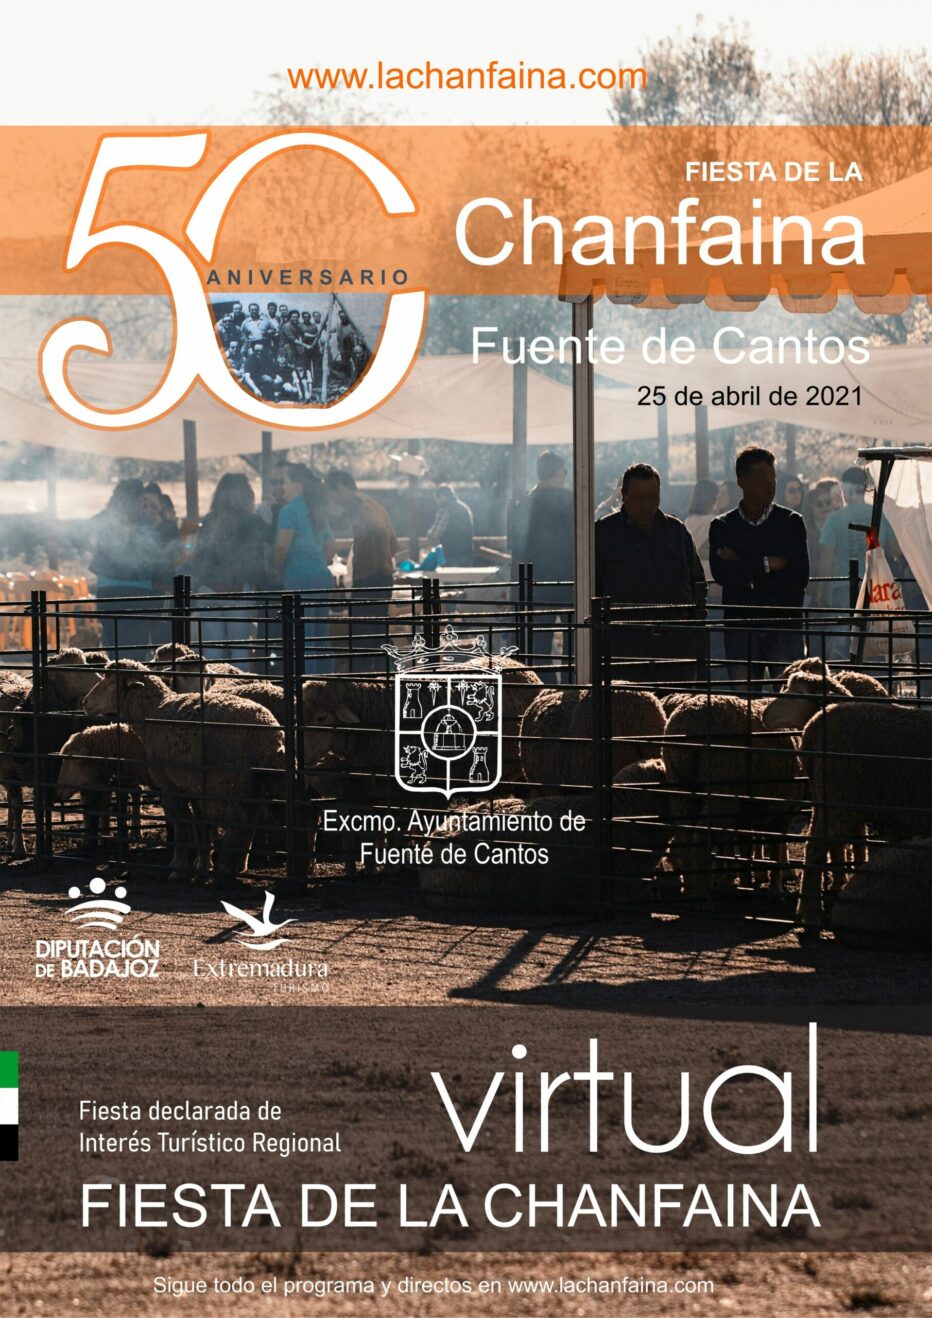 Los actos de la 50 Fiesta de la Chanfaina podrán seguirse en vivo por redes sociales, YouTube y la web www.lachanfaina.com